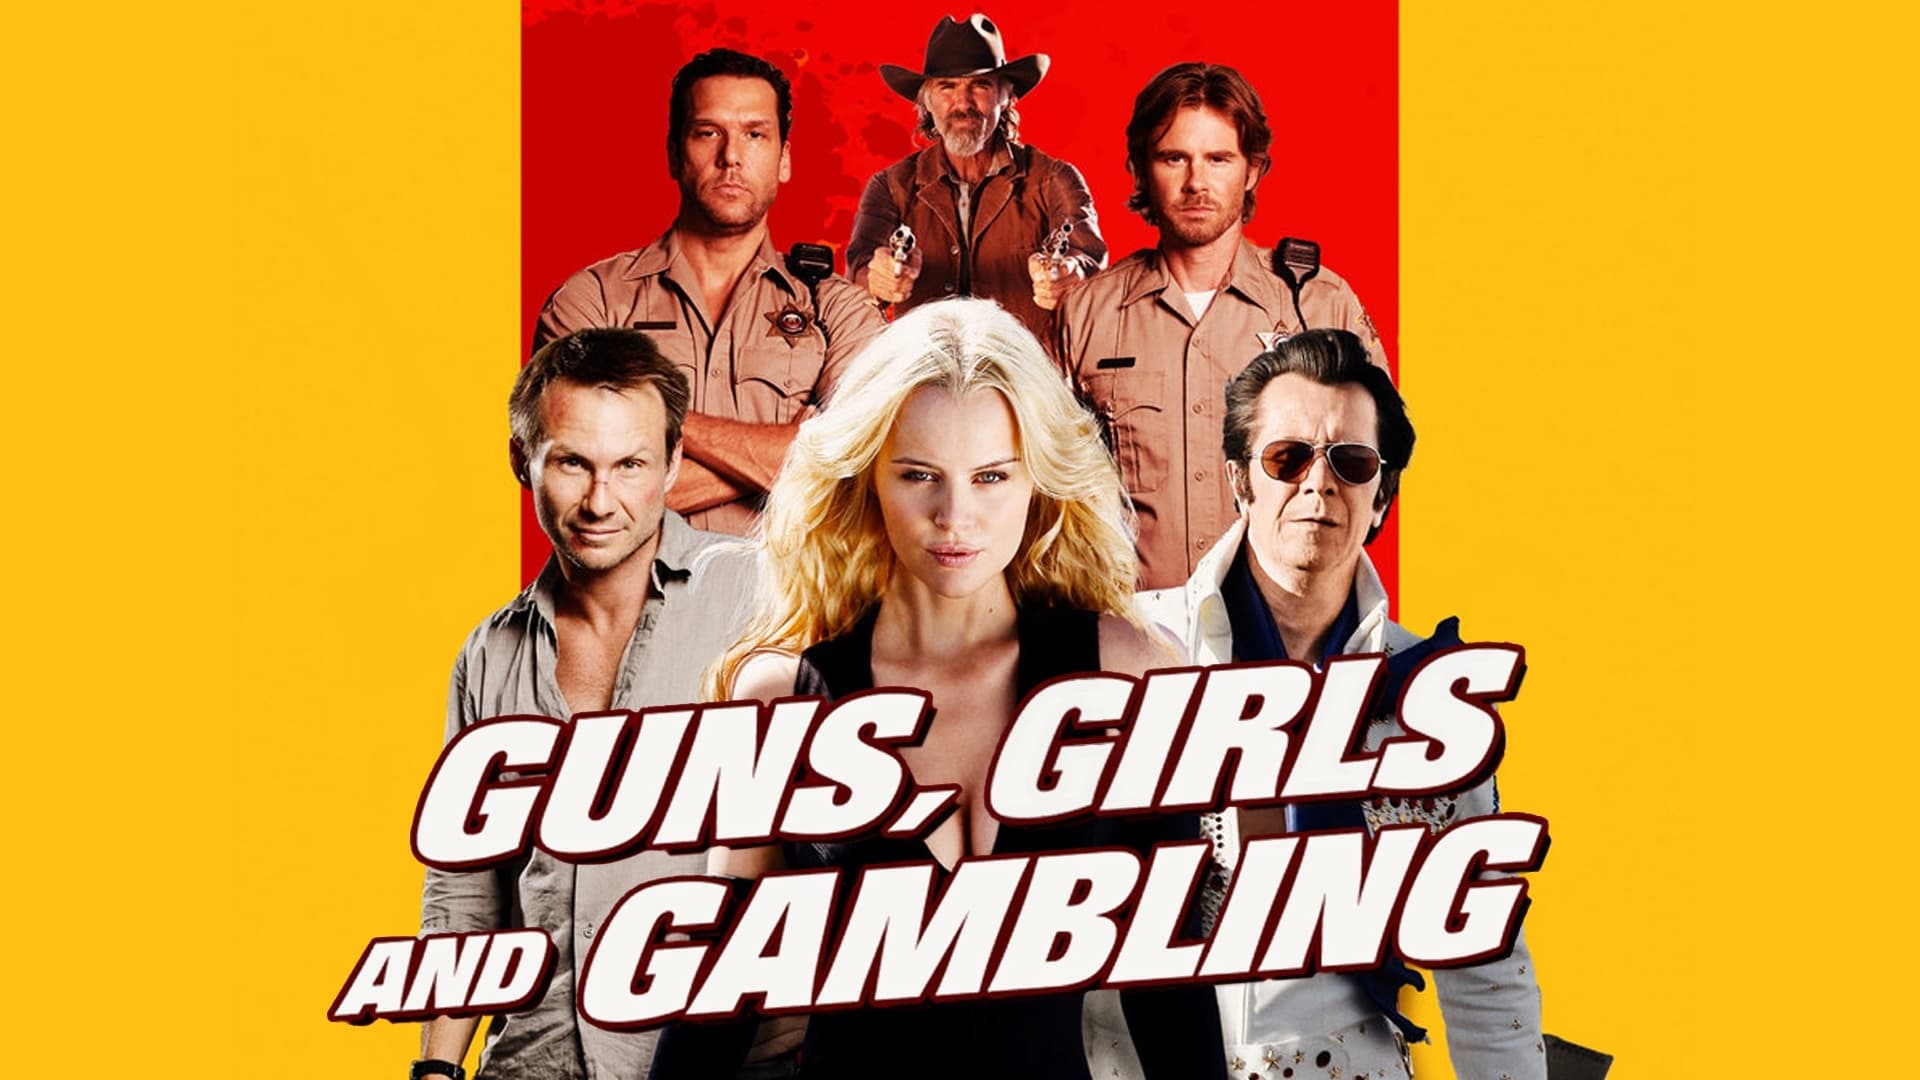 Зброя, дівчата й азарт